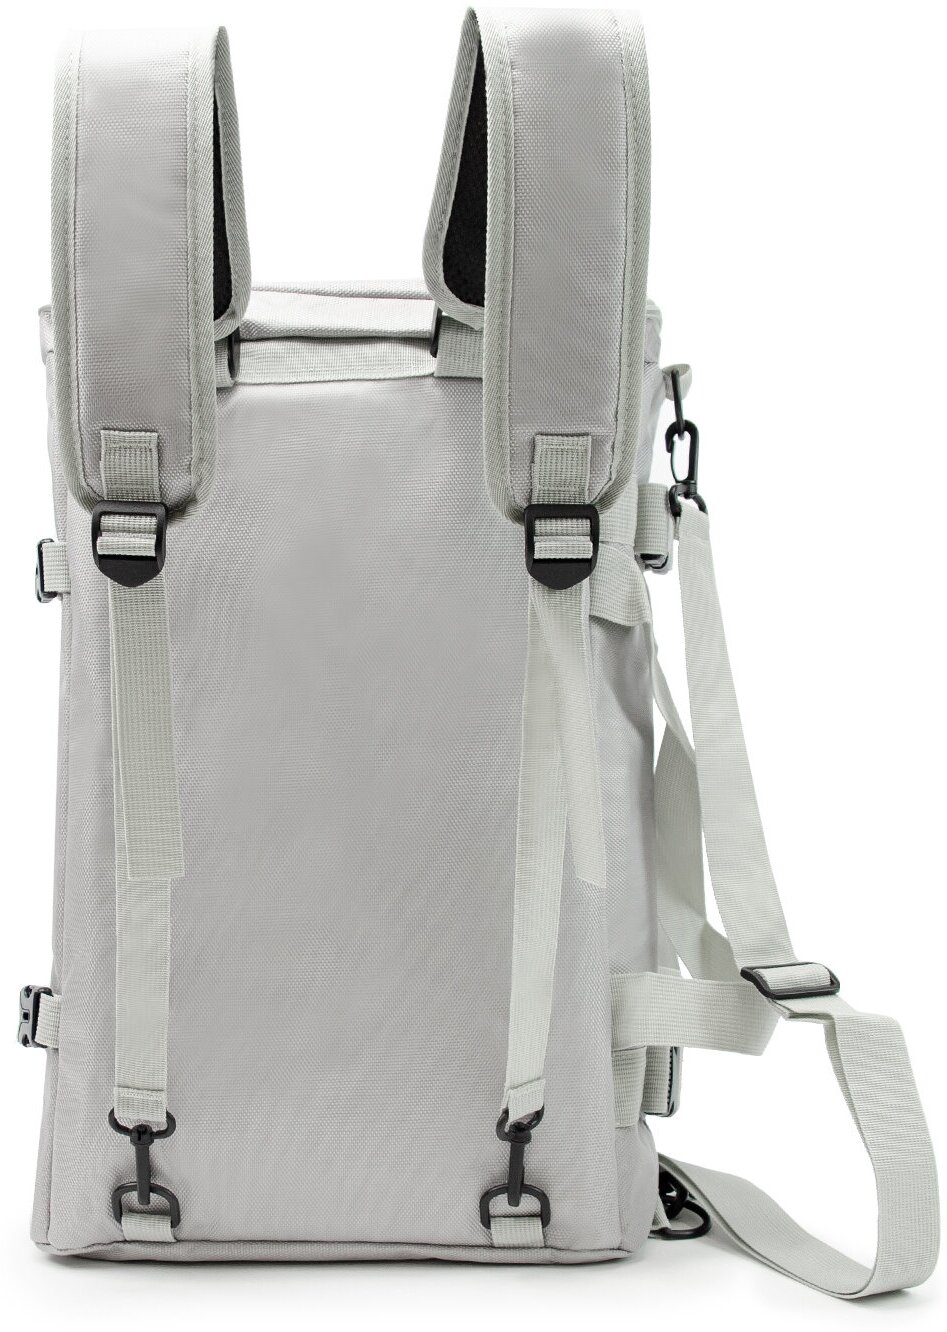 Рюкзак-спортивная сумка (22,5 л, серая) UrbanStorm трансформер большой размер для фитнеса, отдыха \ школьный для мальчиков, девочек - фотография № 4